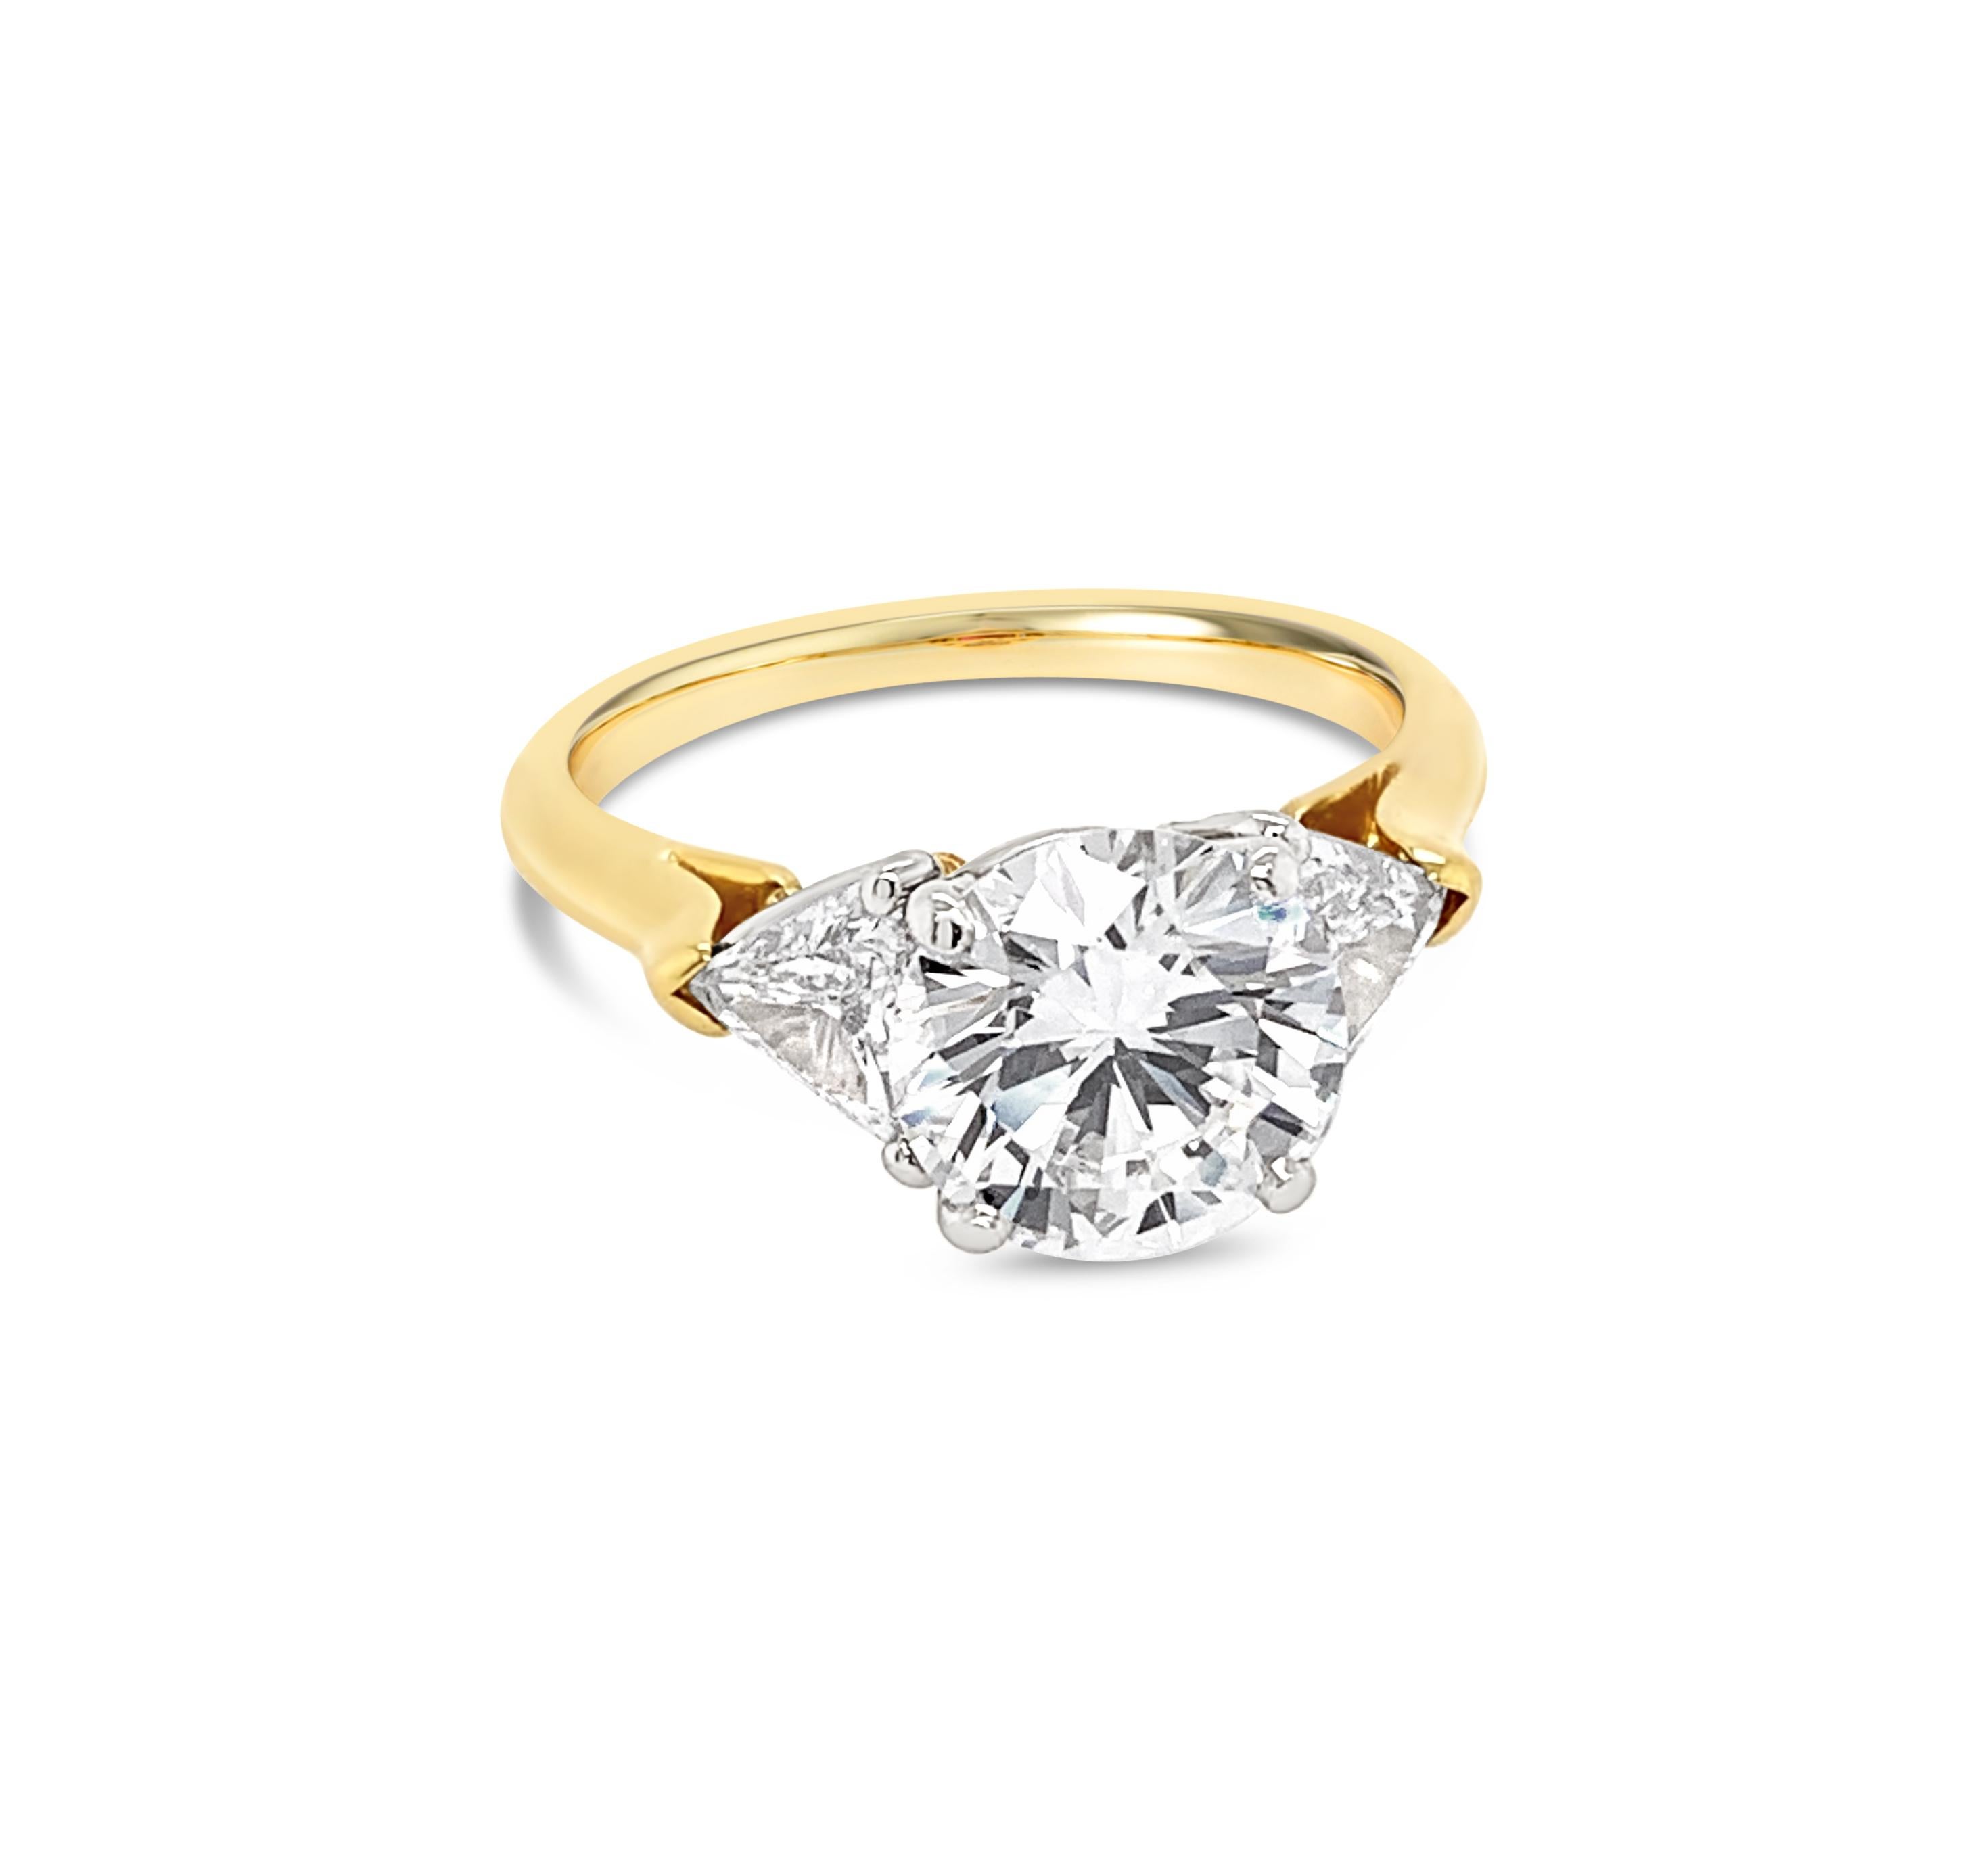 18 carat diamond ring cost